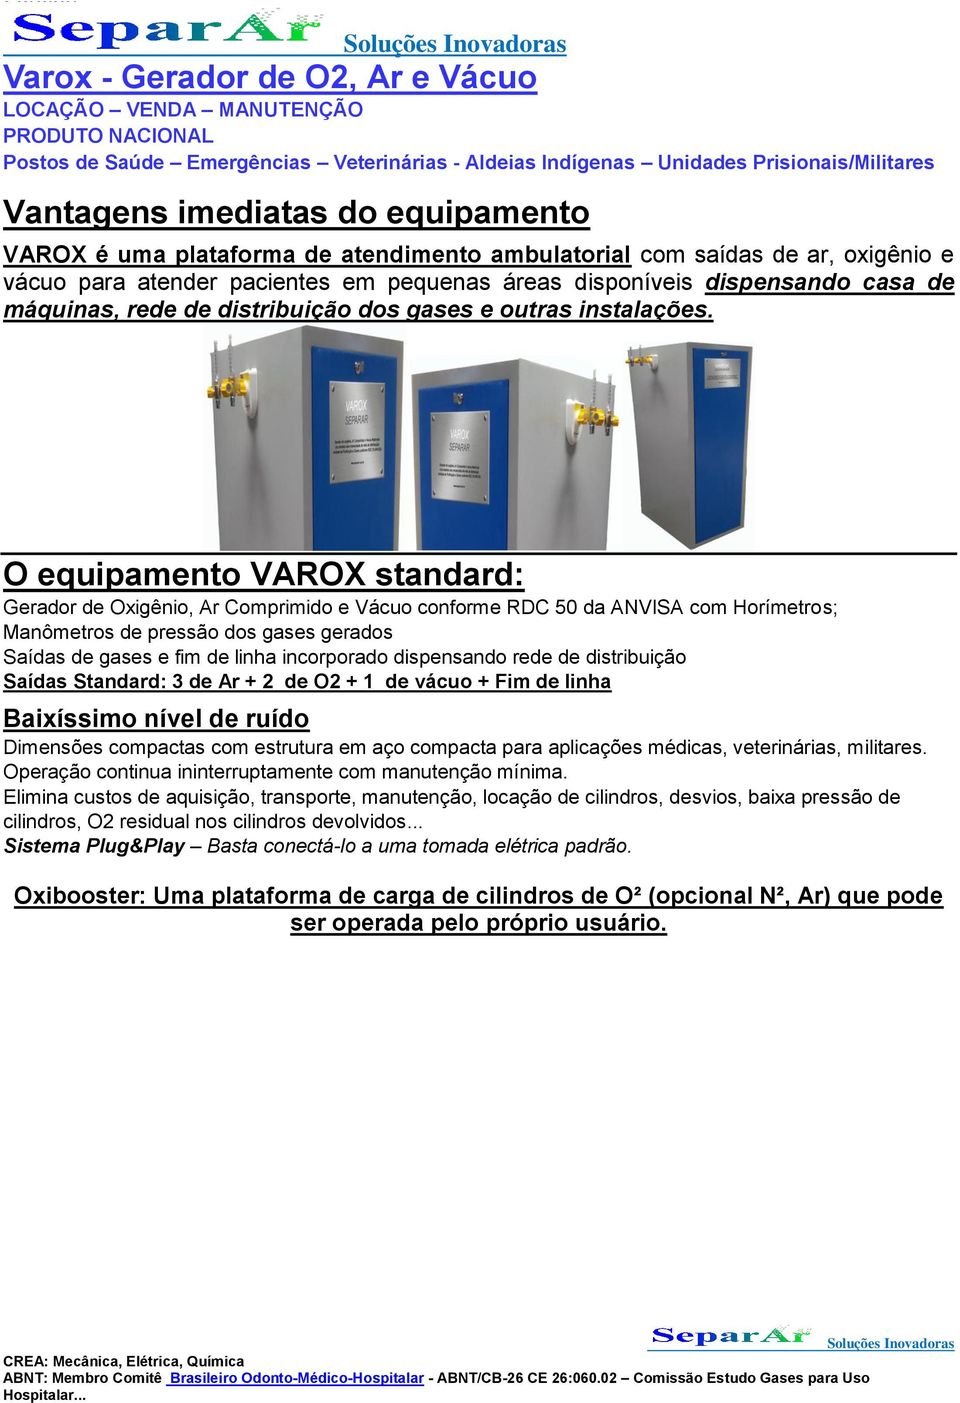 O equipamento VAROX standard: Gerador de Oxigênio, Ar Comprimido e Vácuo conforme RDC 50 da ANVISA com Horímetros; Manômetros de pressão dos gases gerados Saídas de gases e fim de linha incorporado